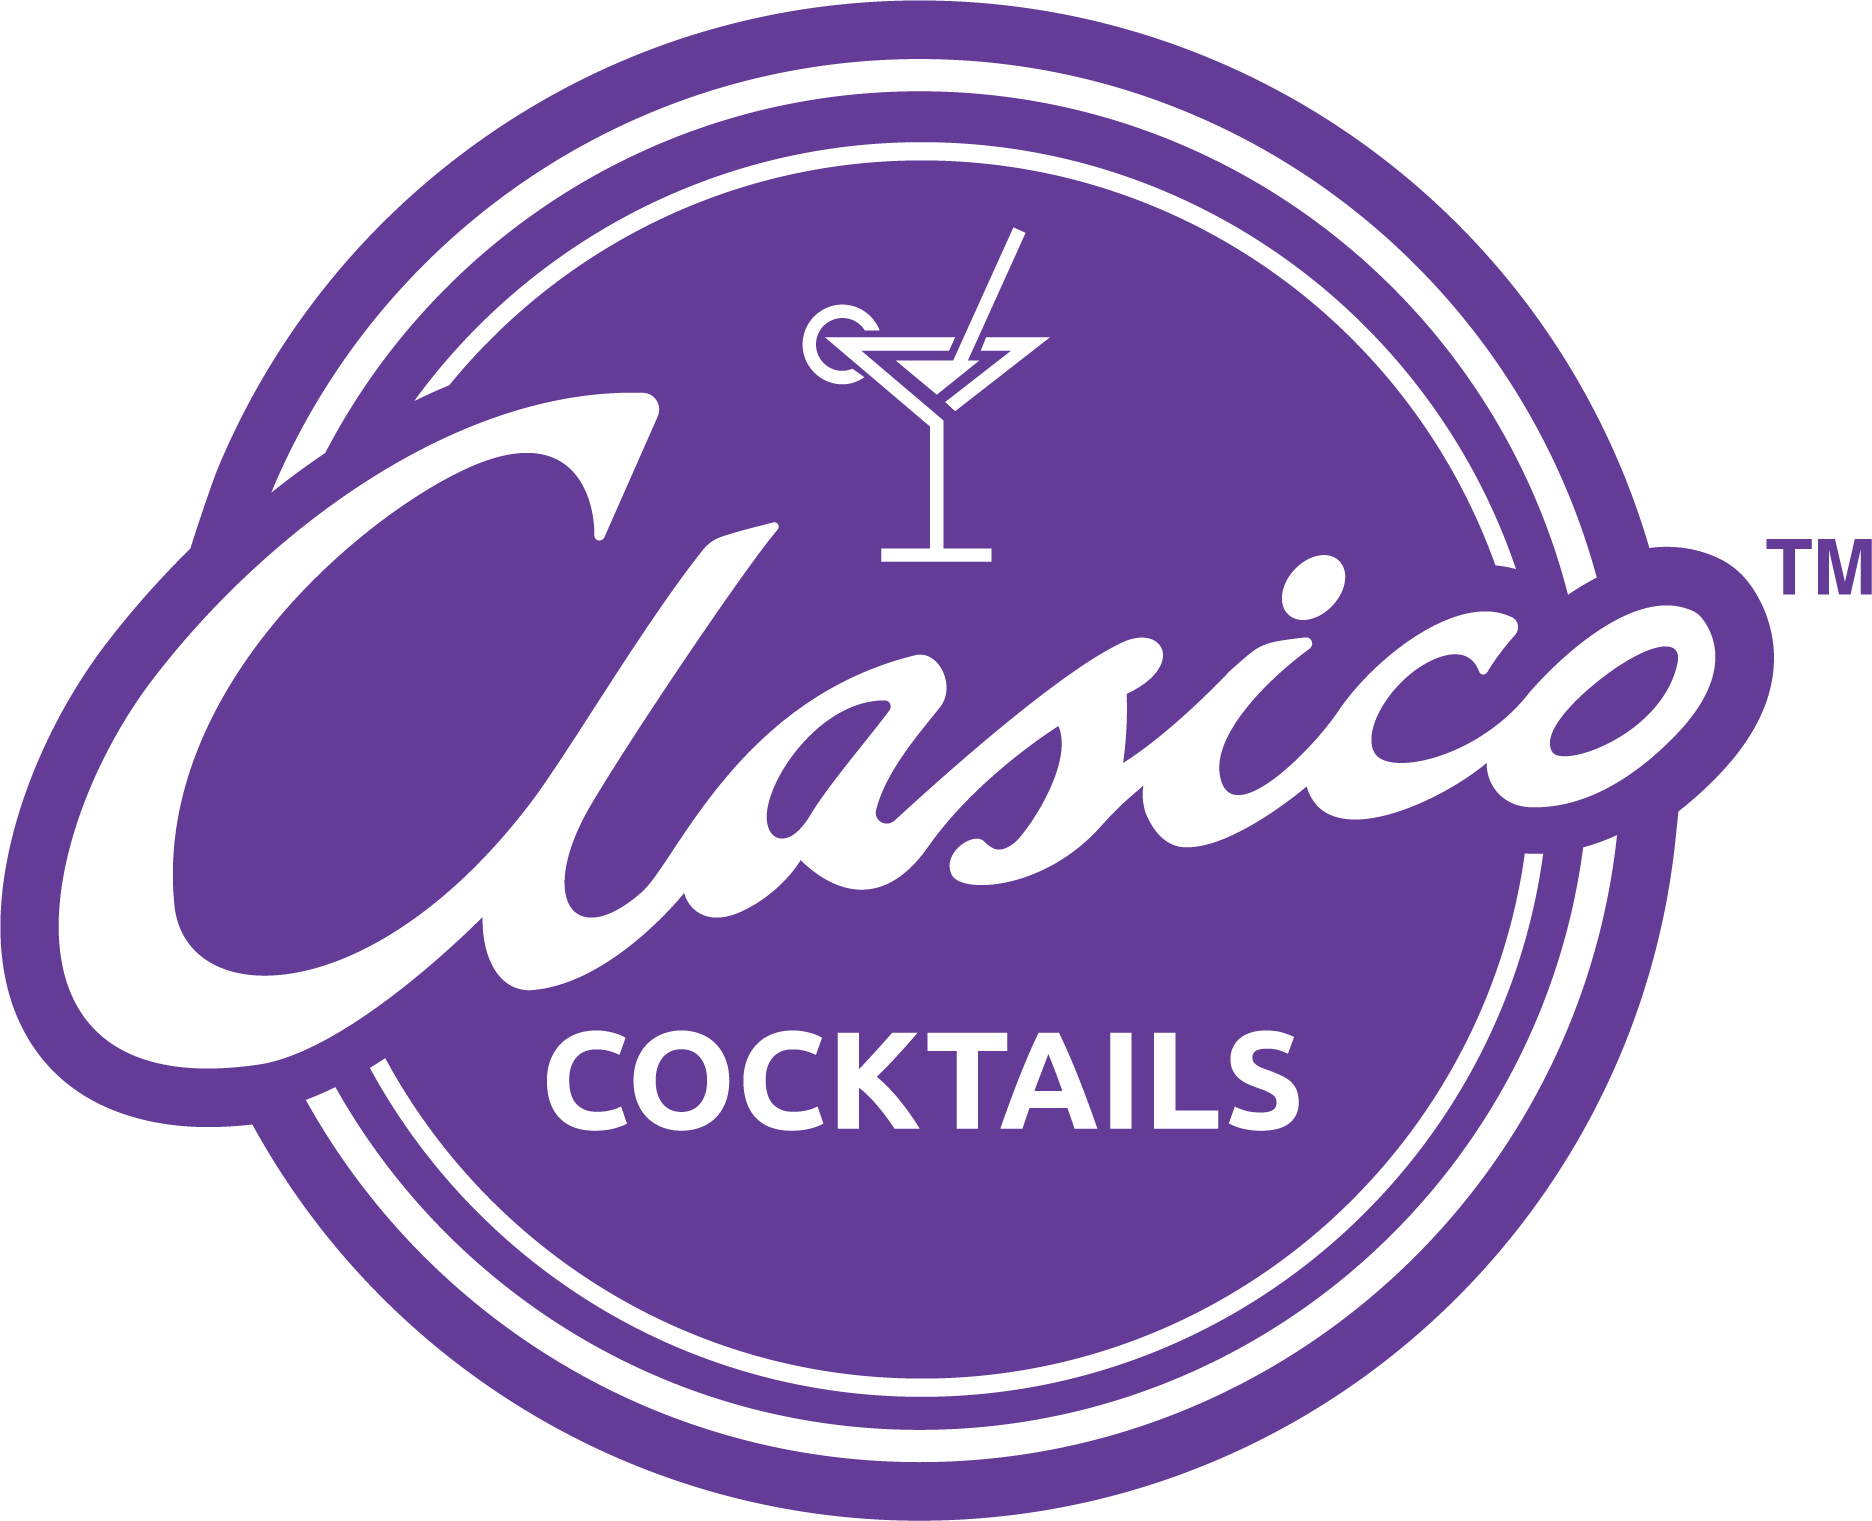 Clasico Cocktails